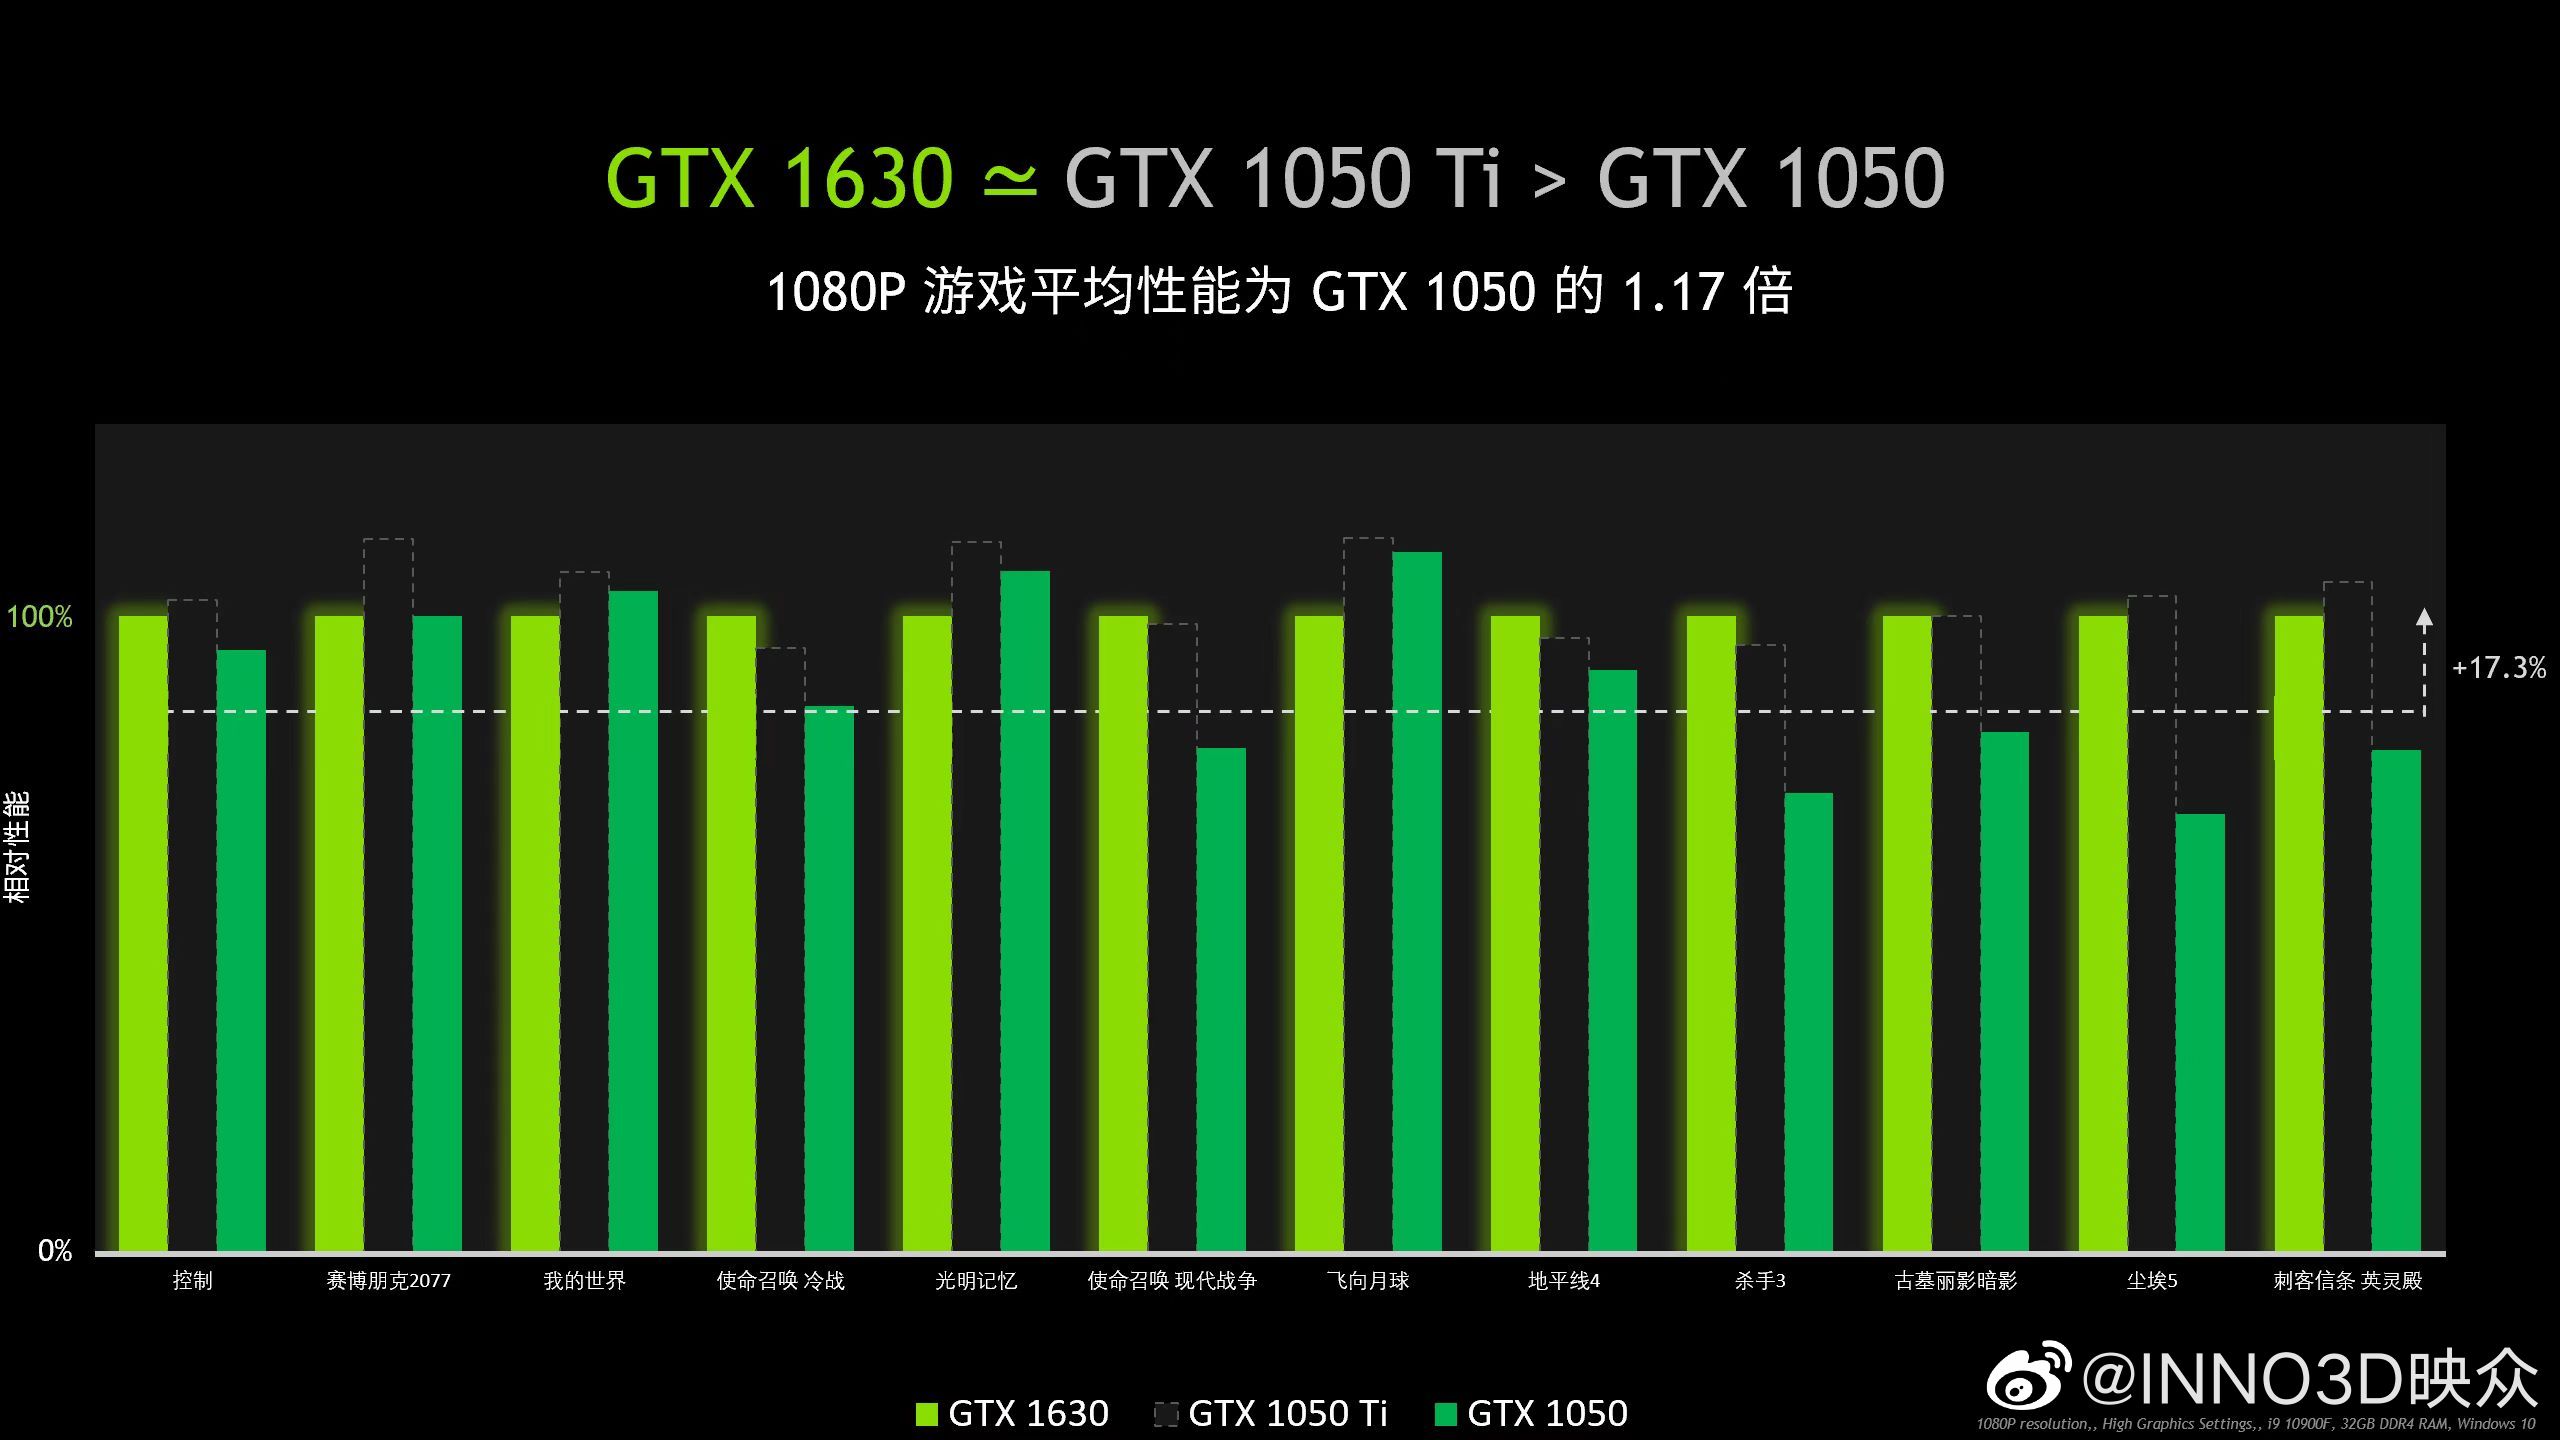 GeForce GTX 1630 giá 169 đô la vừa được phát hành chính thức nhanh bằng GTX 1050 Ti 139 đô la từ - VI Atsit